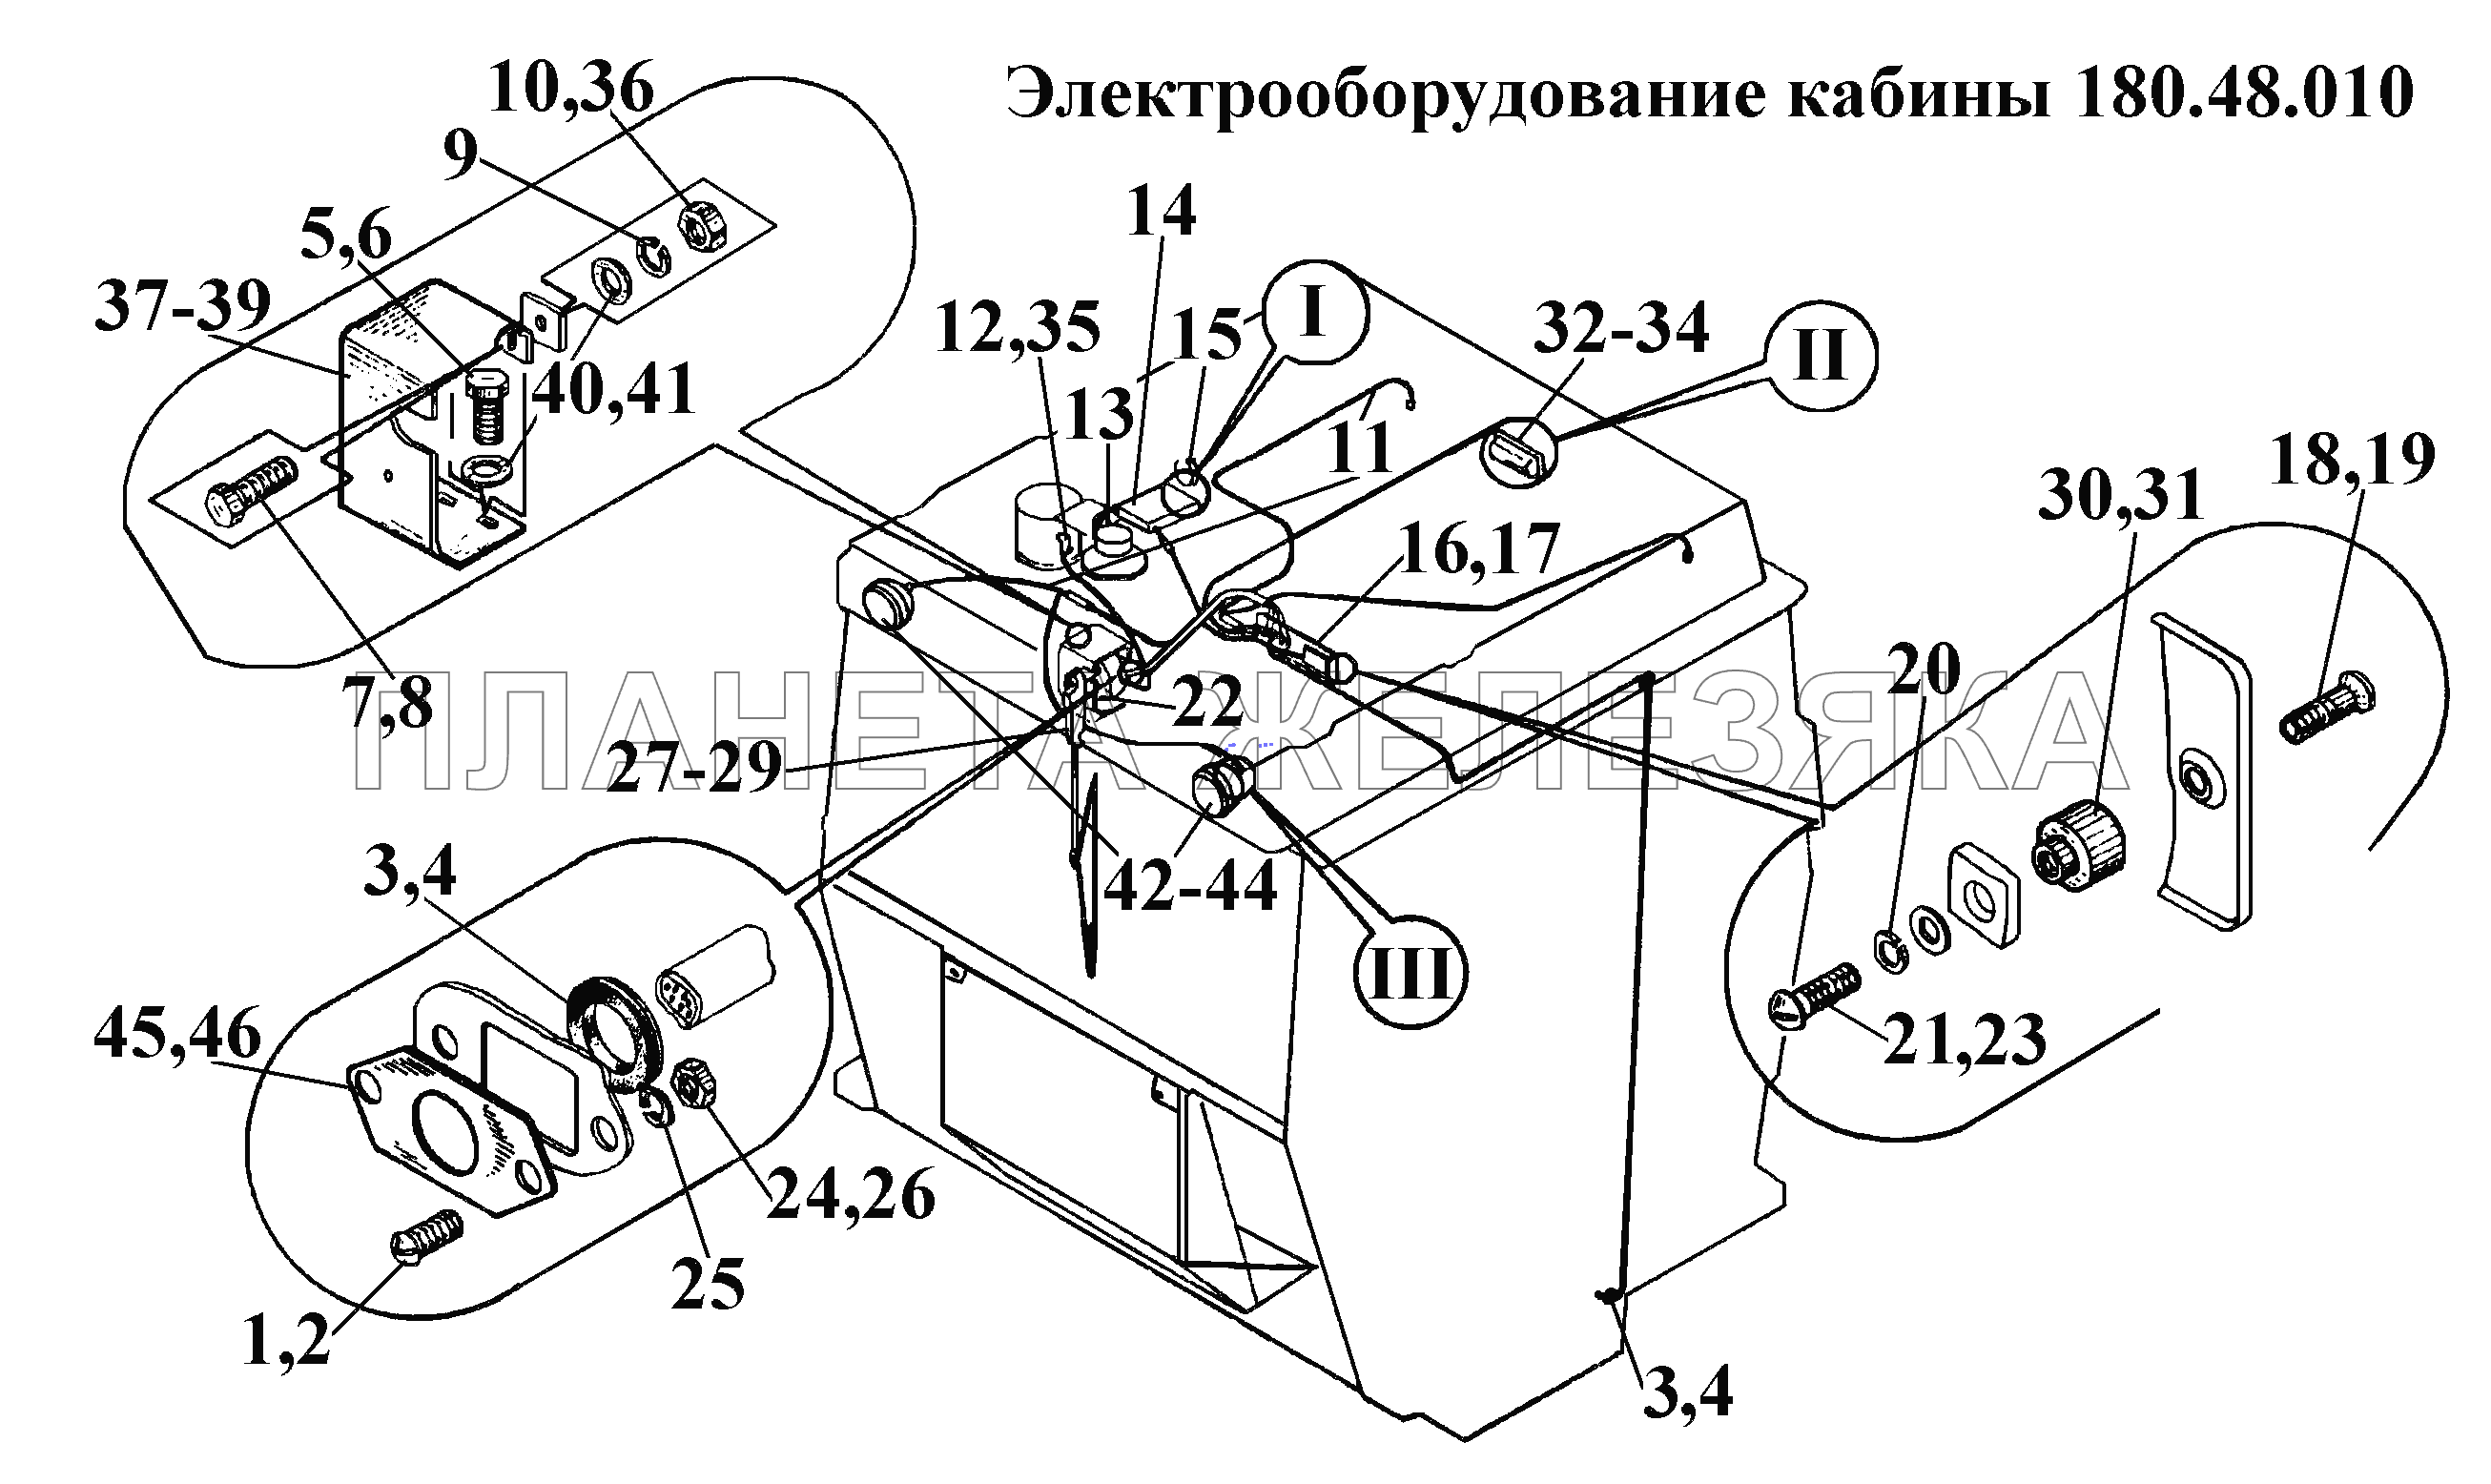 Электрооборудование кабины 180.48.010 (1) ВТ-100Д